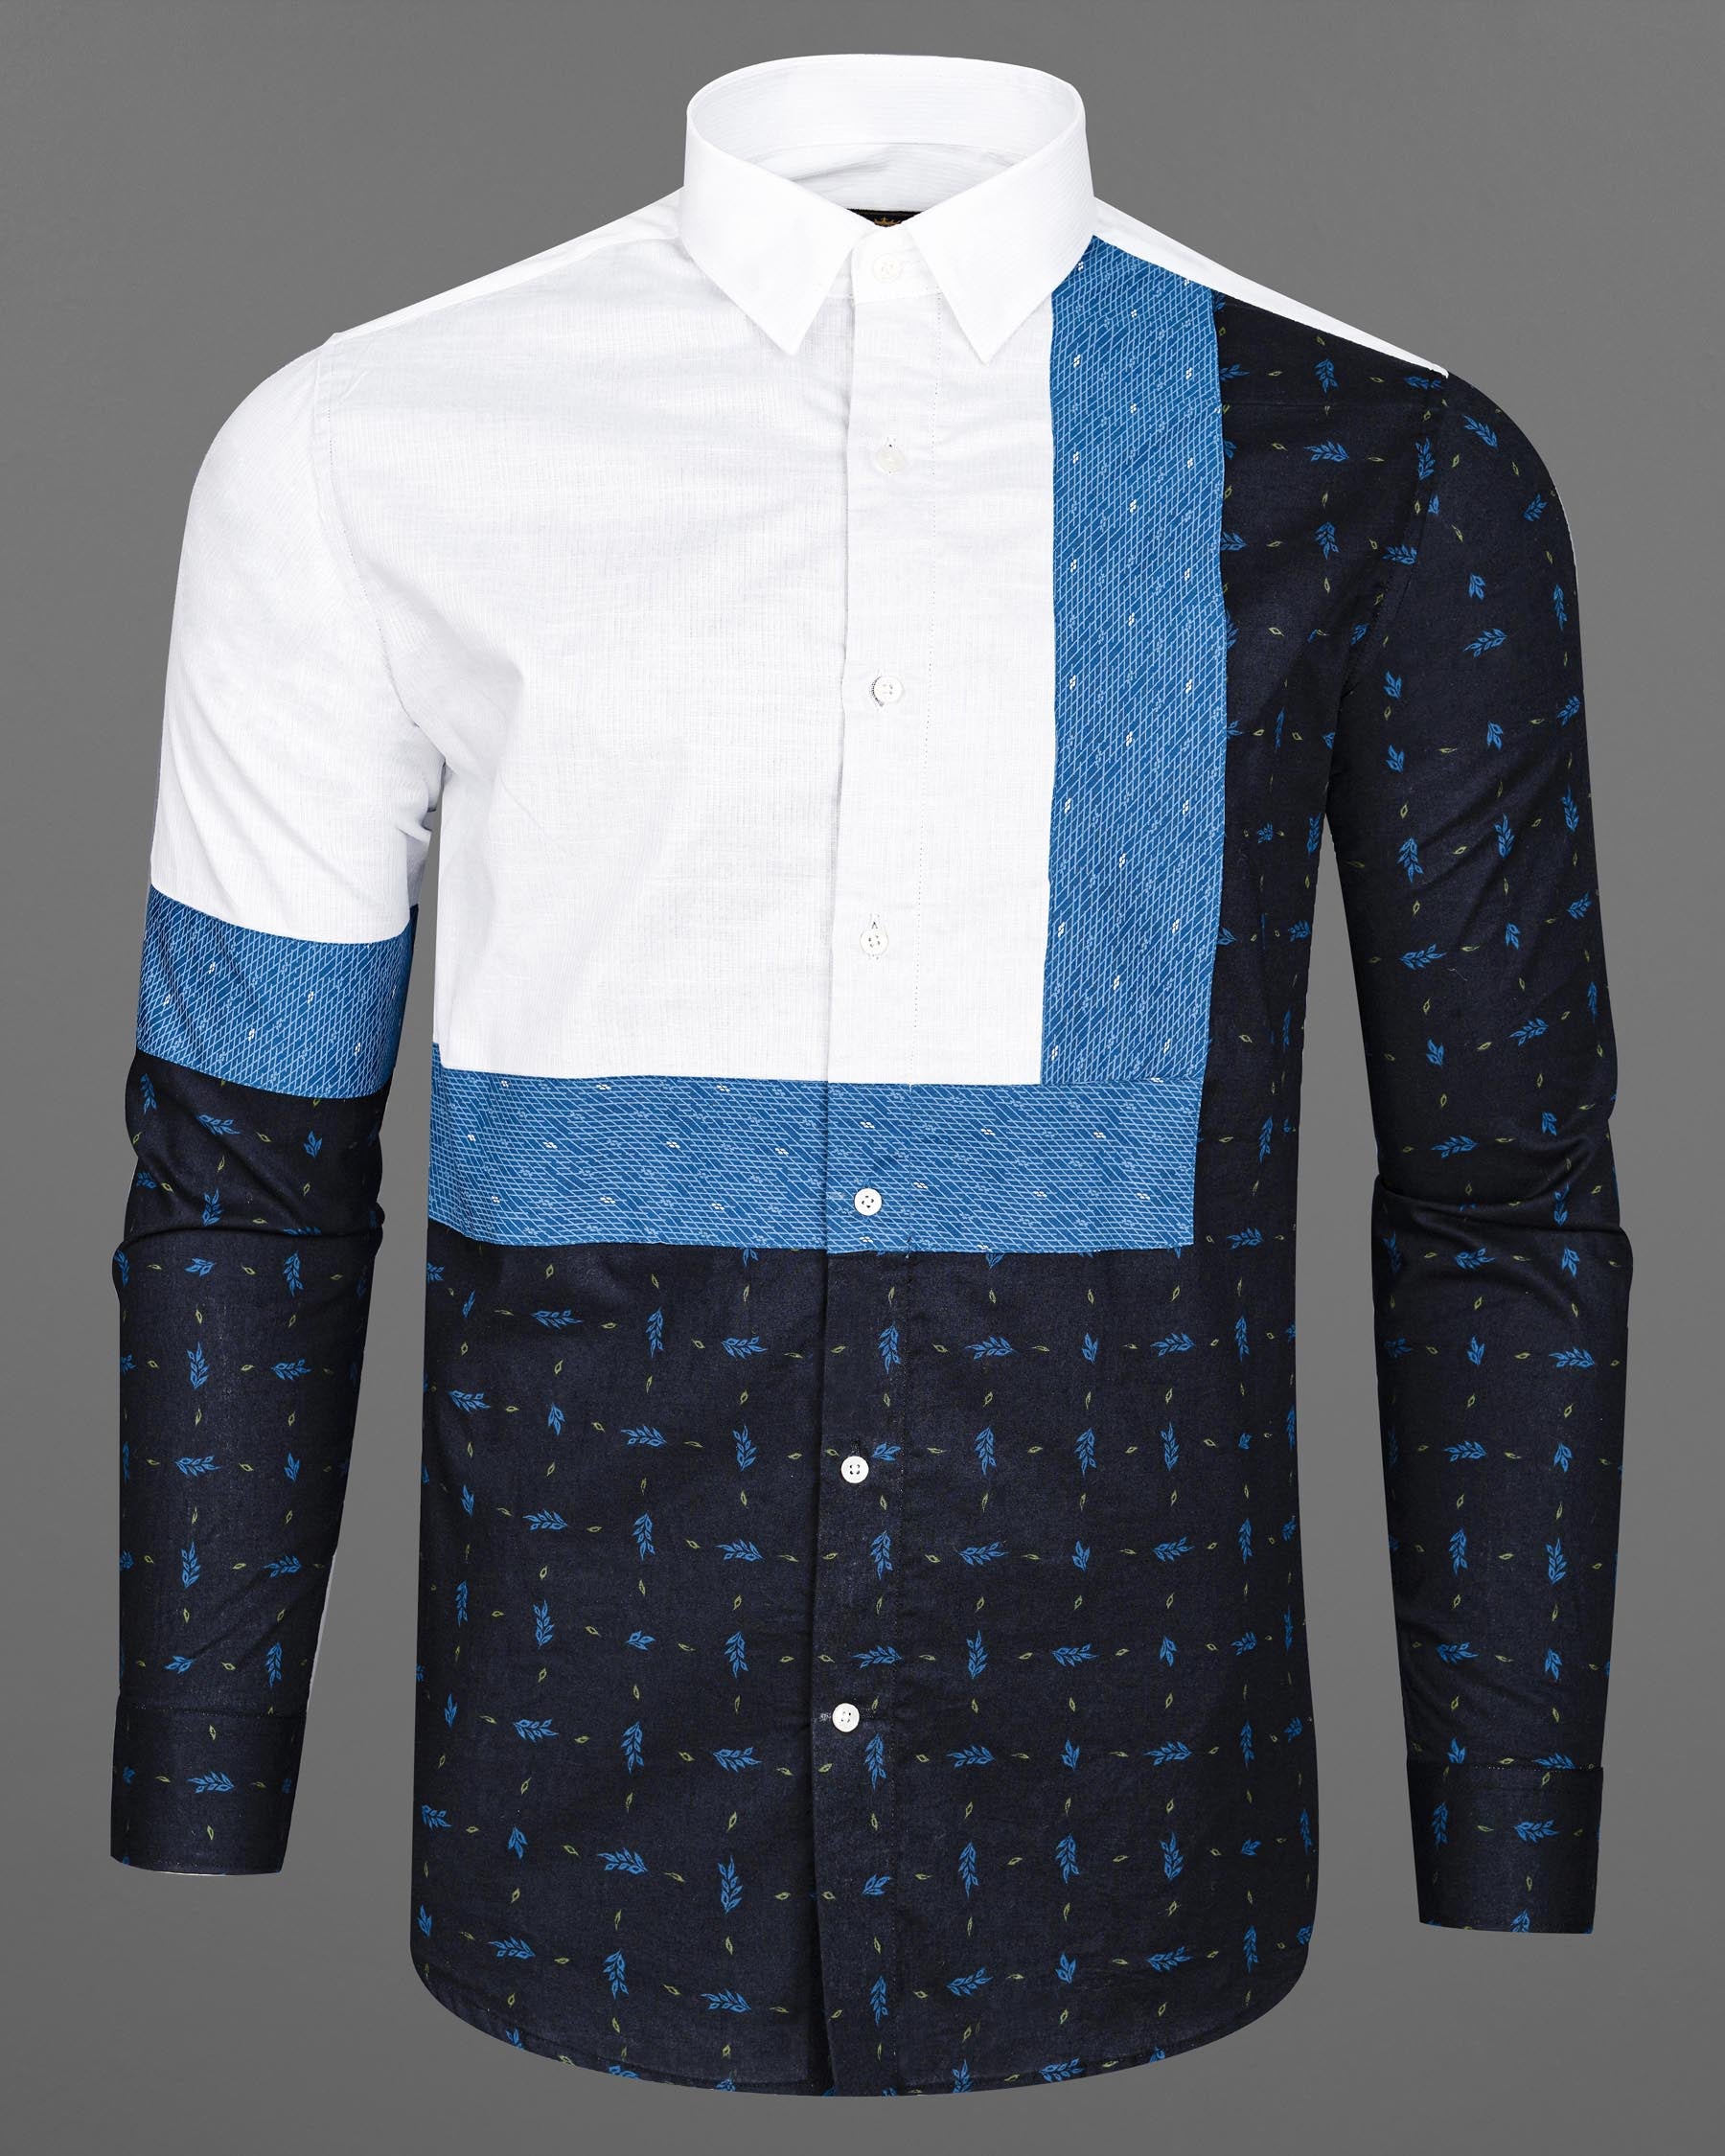 Bright White with Azure Blue and Black Dobby Textured Designer Shirt 7856-P148-38, 7856-P148-39, 7856-P148-40, 7856-P148-42, 7856-P148-44, 7856-P148-46, 7856-P148-48, 7856-P148-50, 7856-P148-52